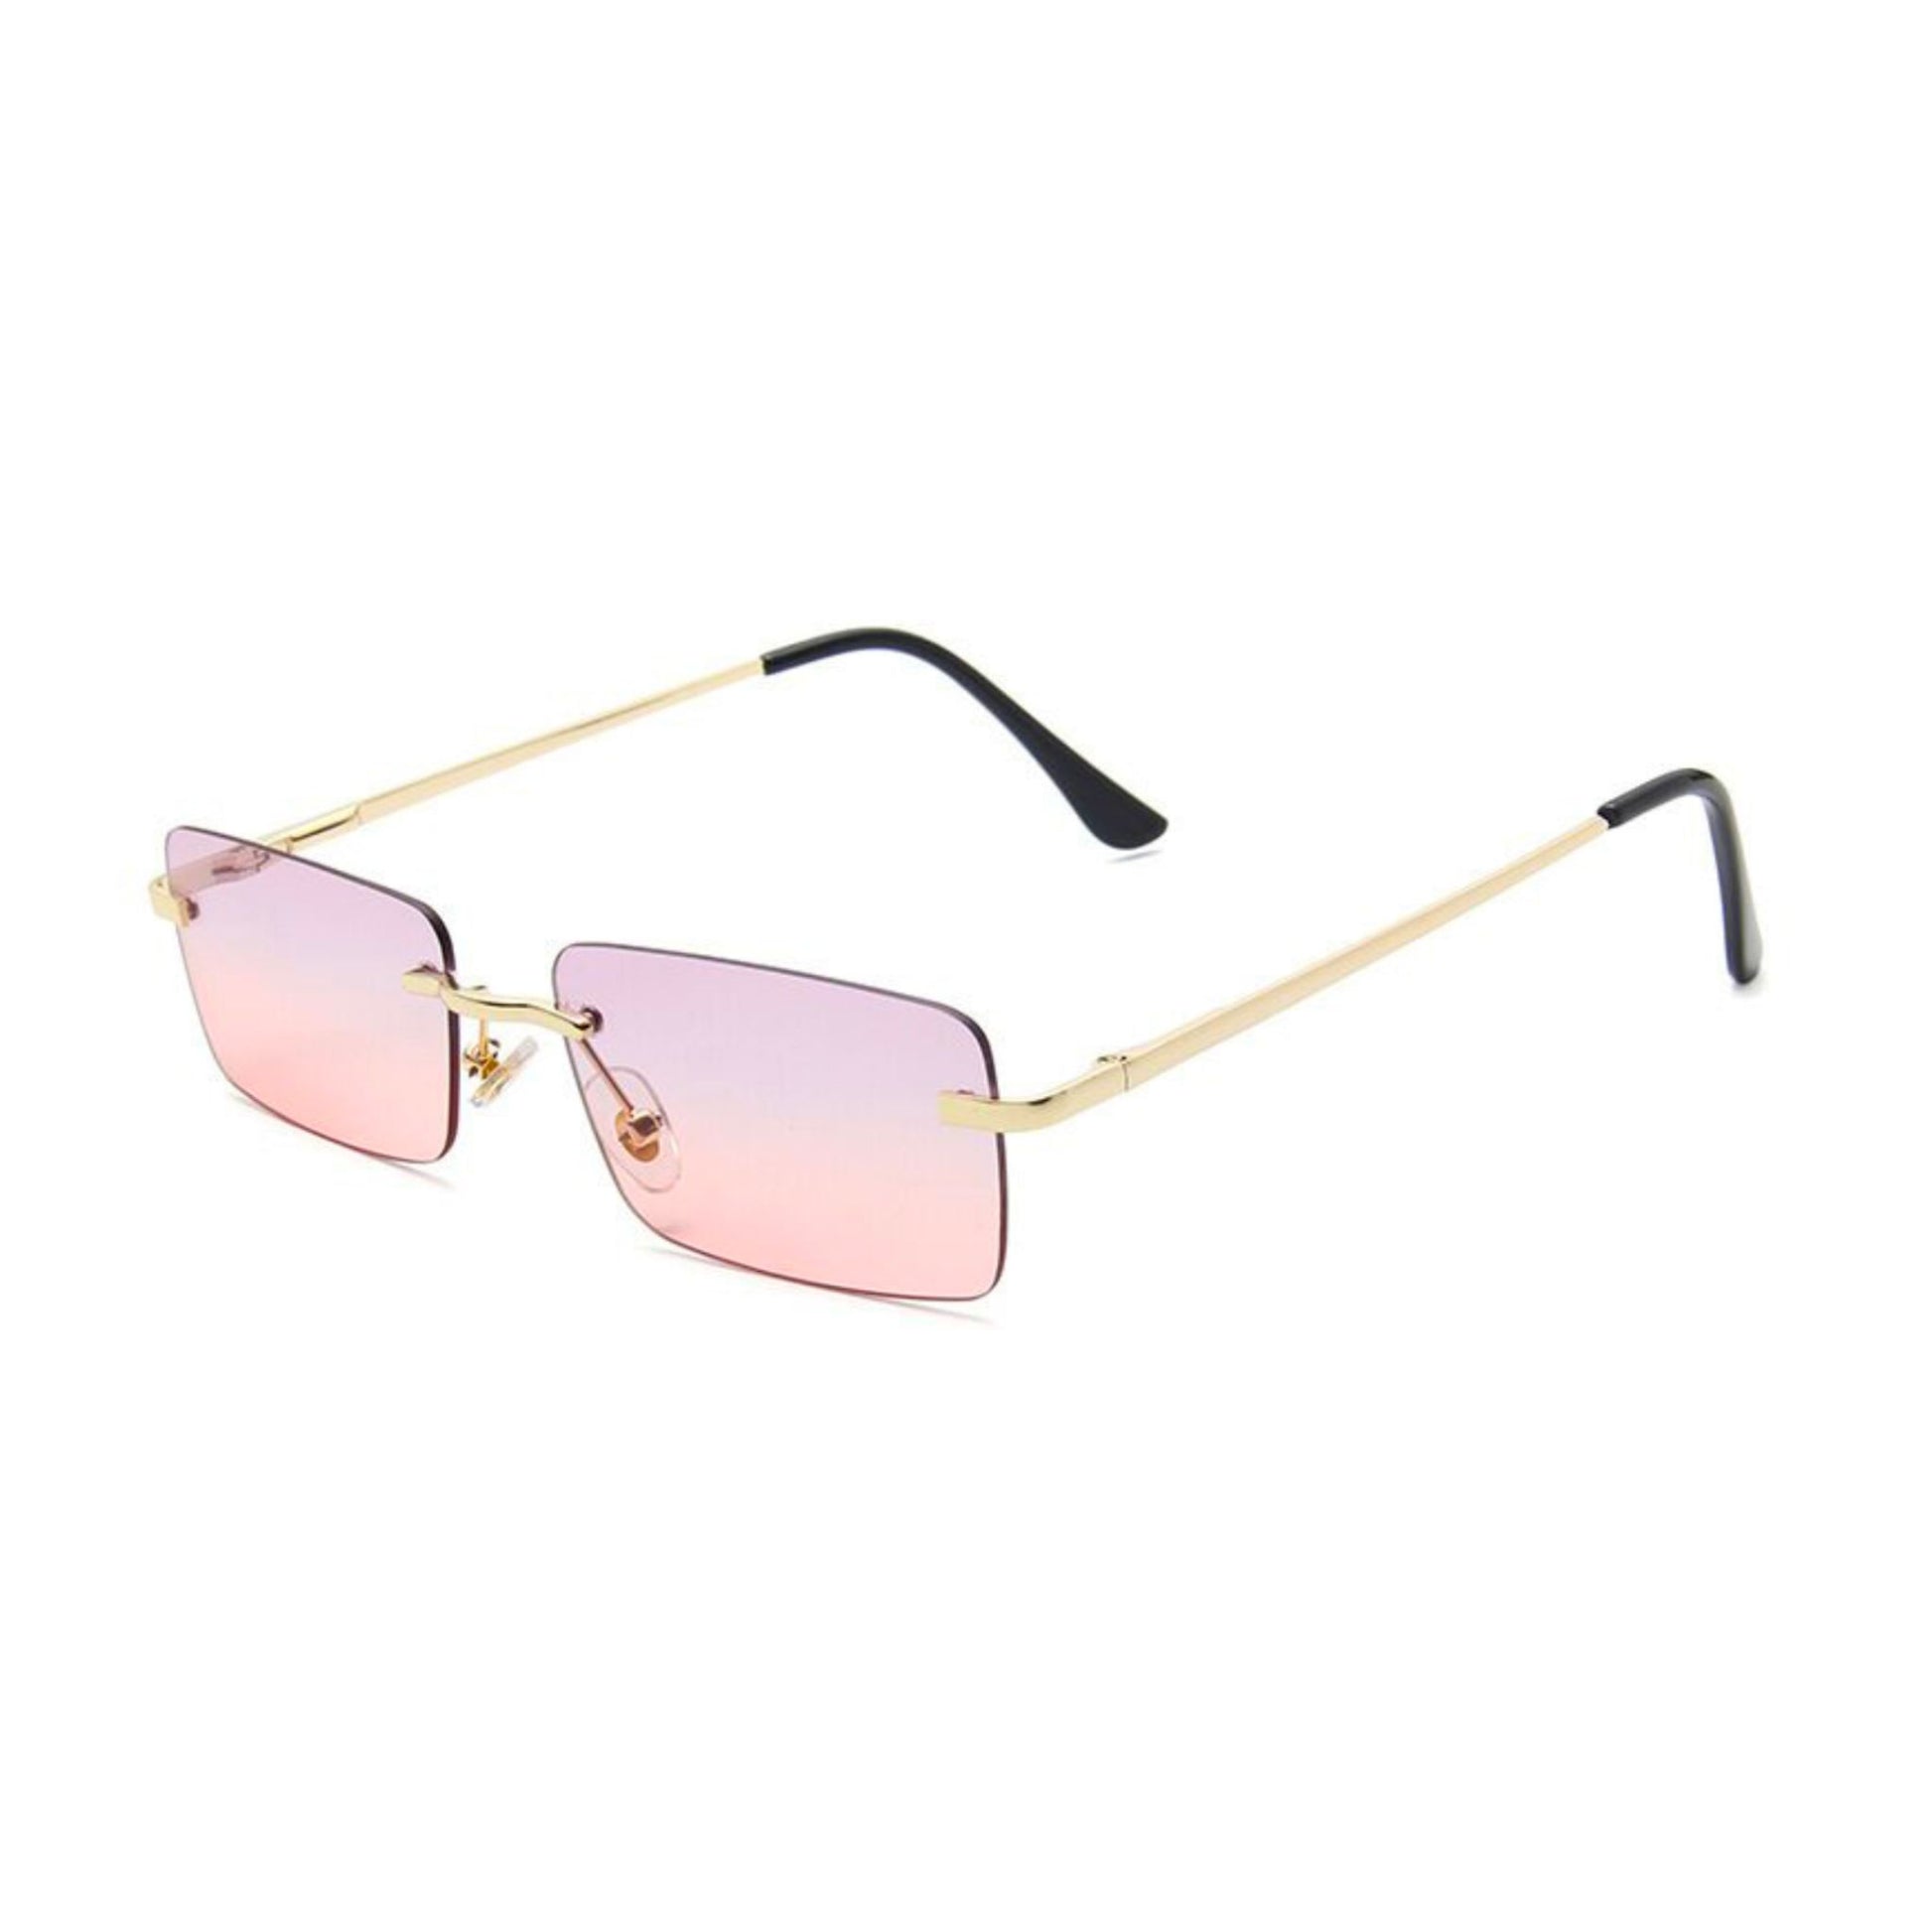 Ορθογώνια Γυαλιά Ηλίου Tez της Exposure Sunglasses με προστασία UV400 σε χρυσό χρώμα σκελετού και ροζ φακό. Πλάγια προβολή.